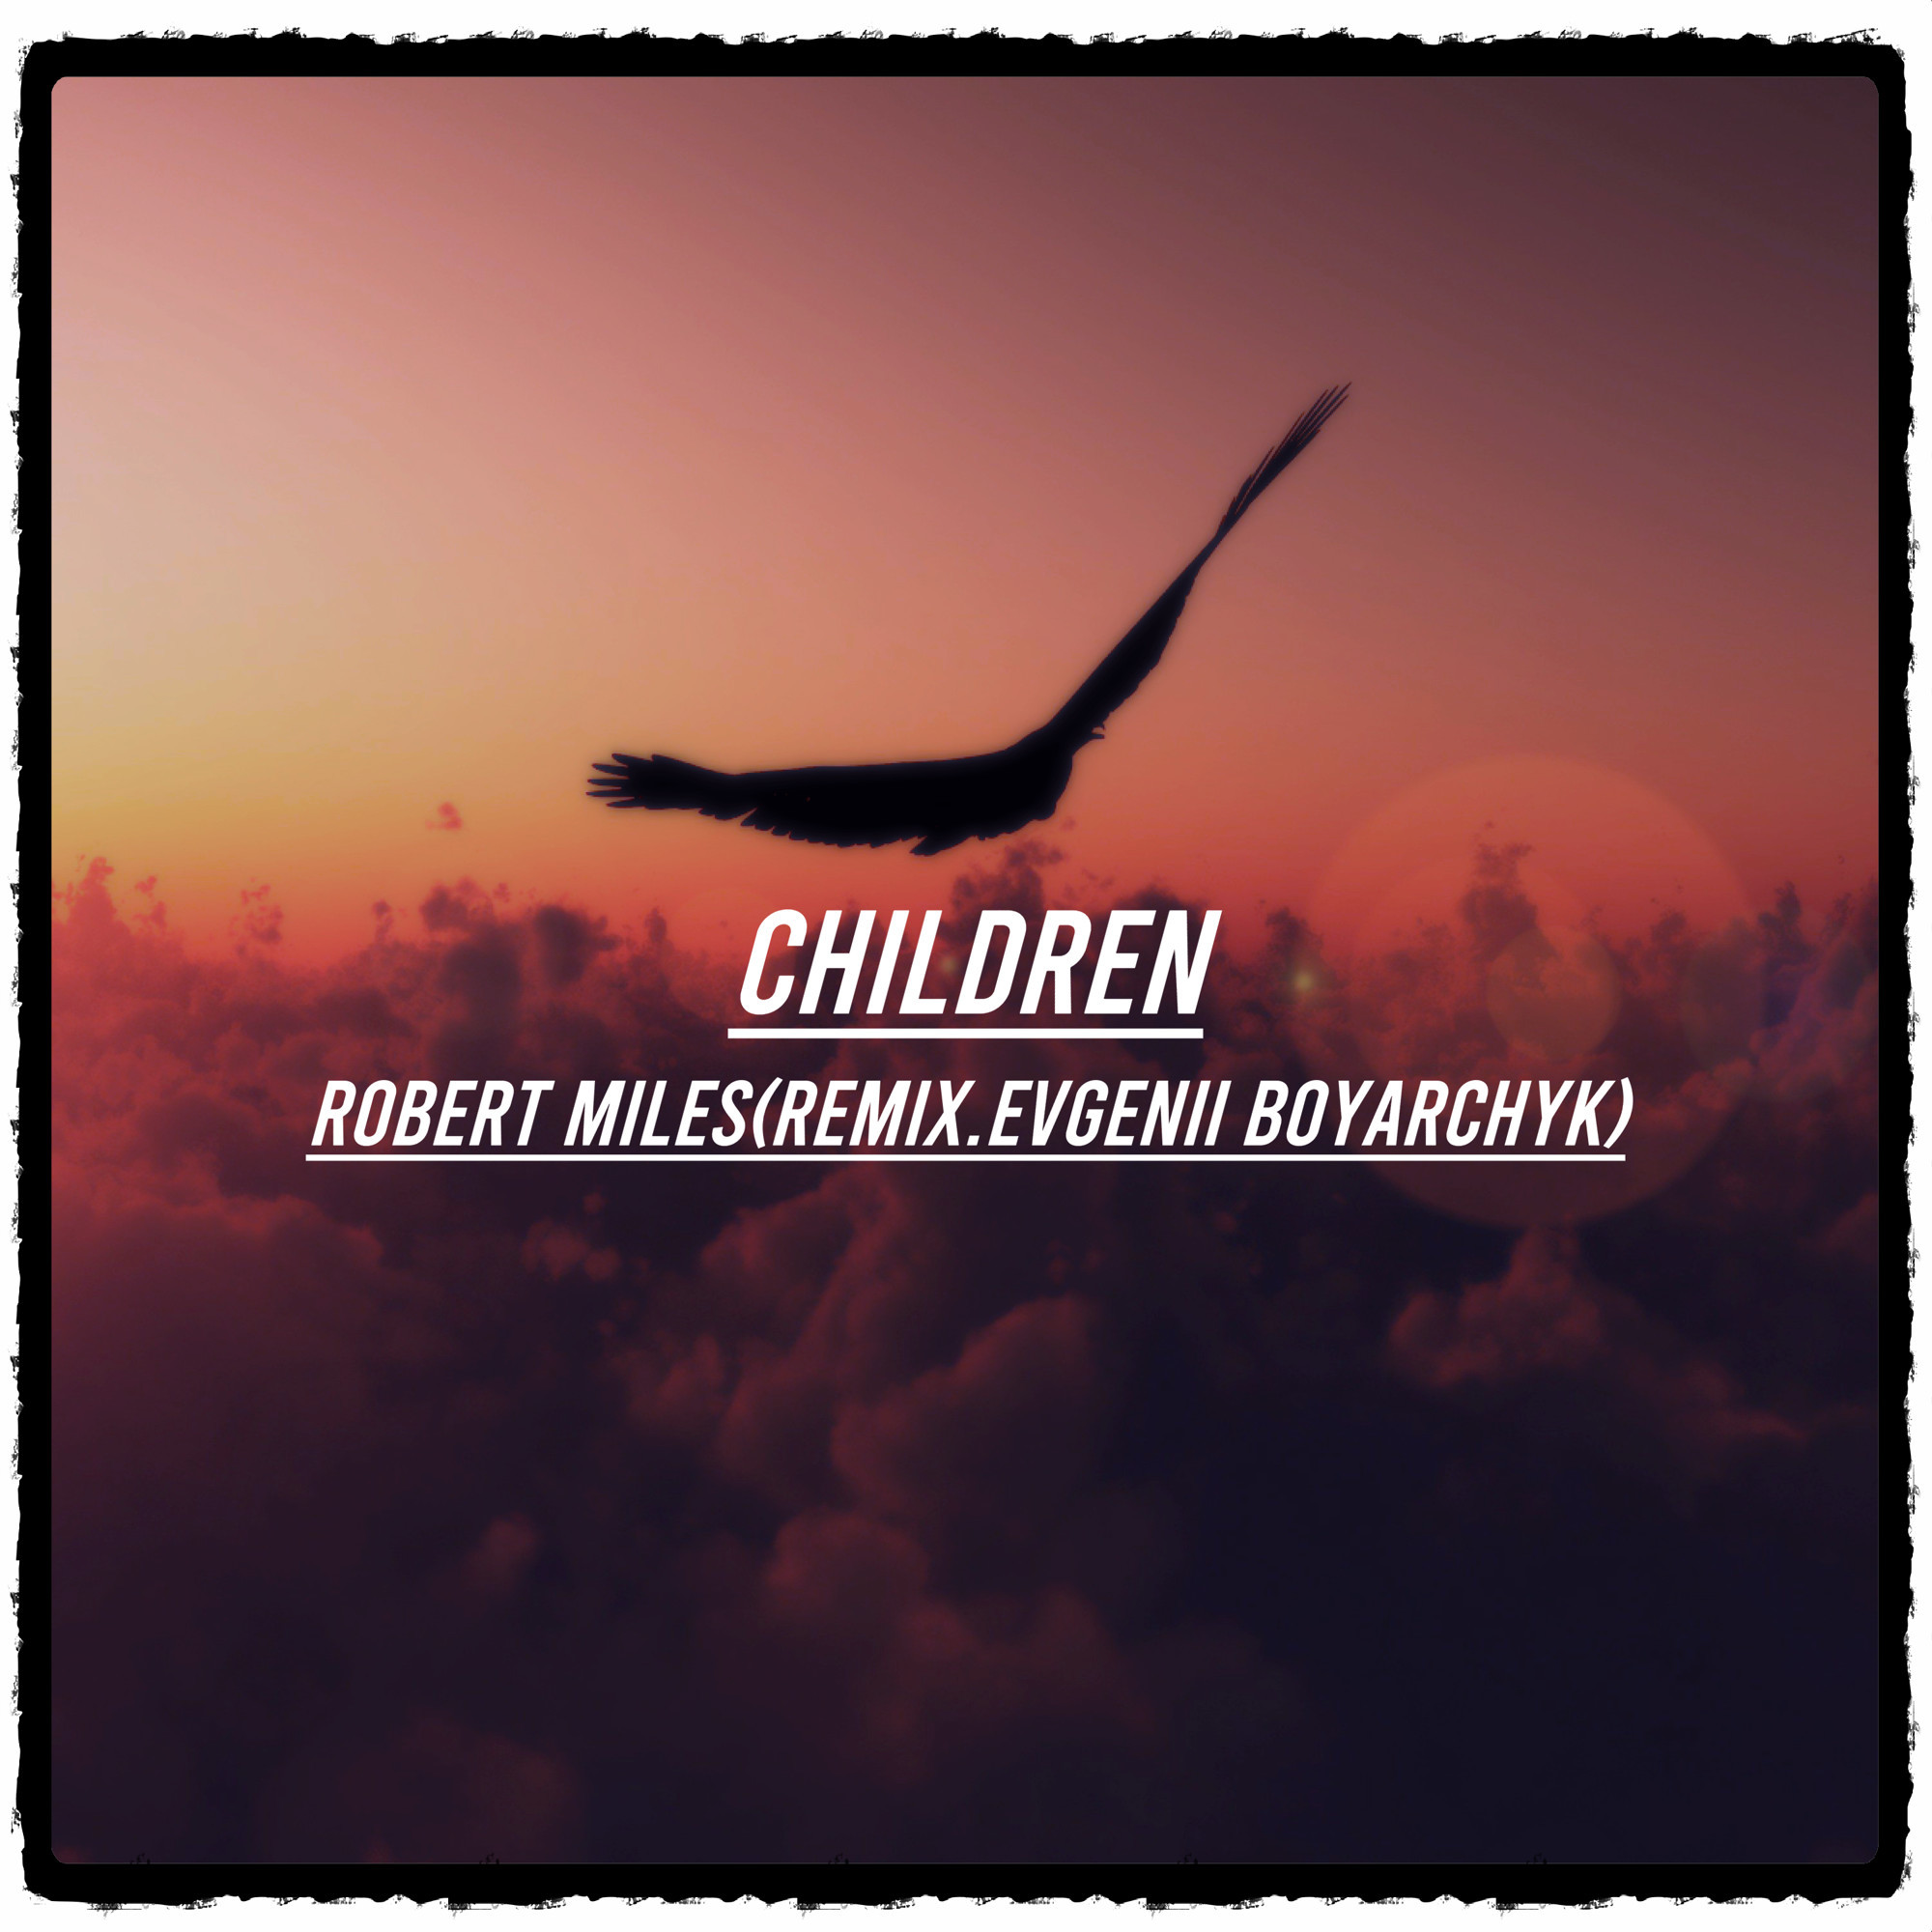 Robert Miles children 2020. Robert Miles - children (Dmitry Air Remix). Robert miles remix